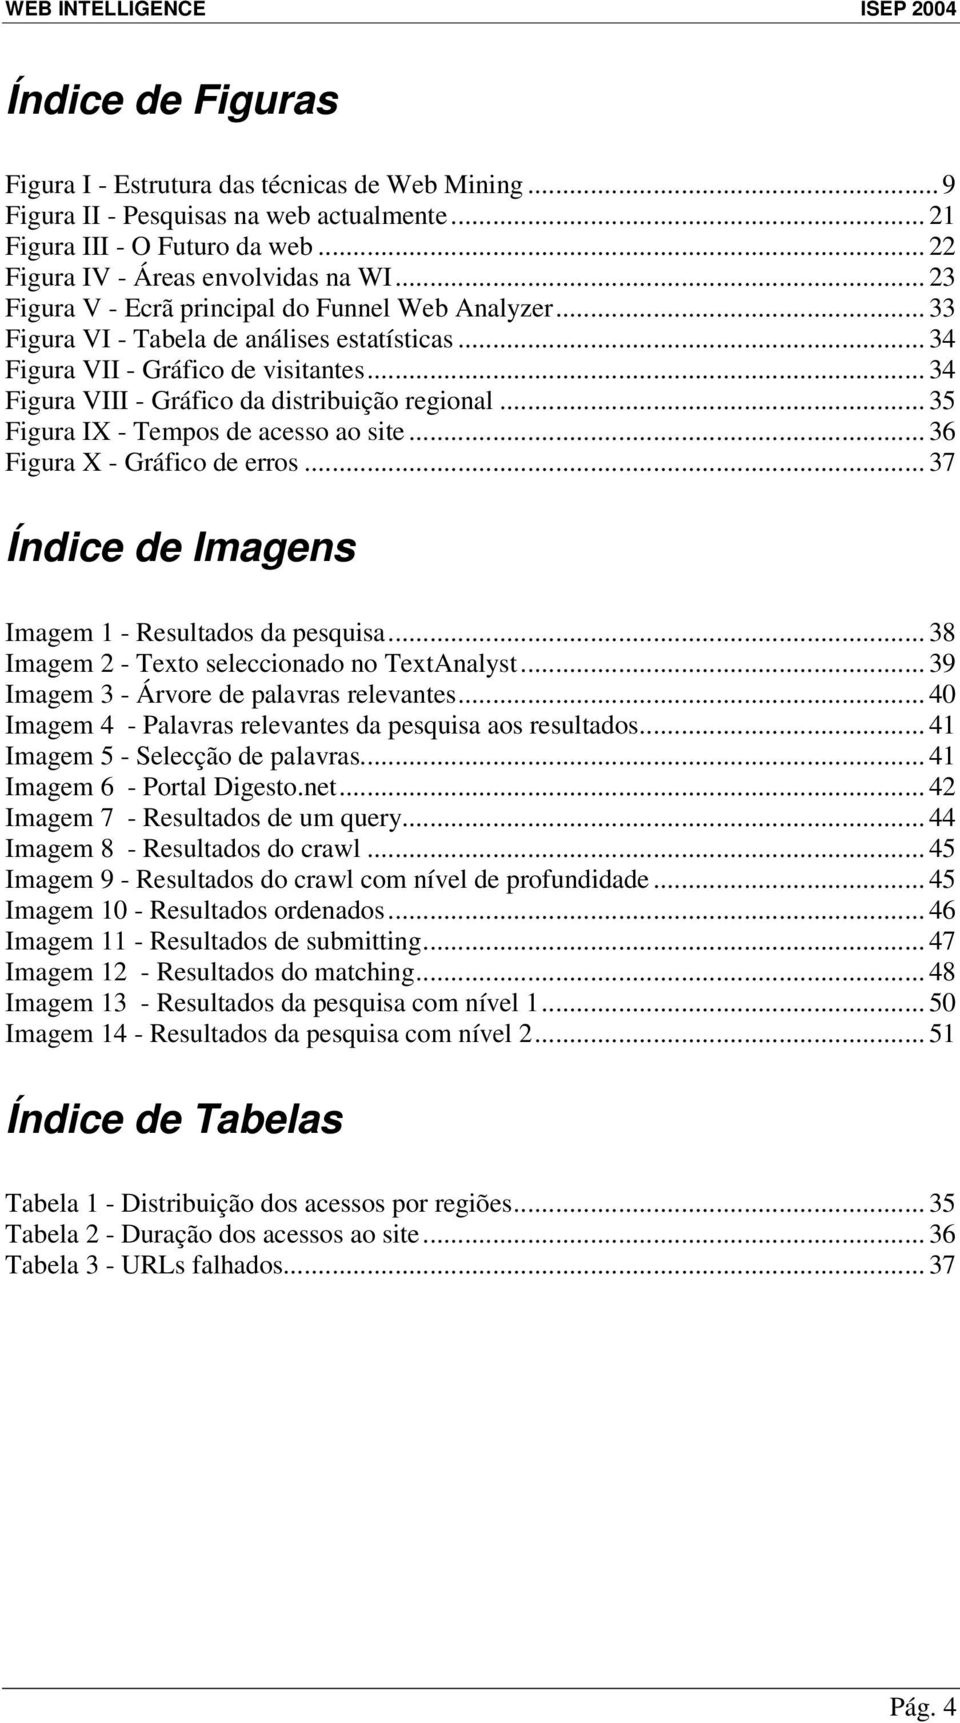 .. 35 Figura IX - Tempos de acesso ao site... 36 Figura X - Gráfico de erros... 37 Índice de Imagens Imagem 1 - Resultados da pesquisa... 38 Imagem 2 - Texto seleccionado no TextAnalyst.